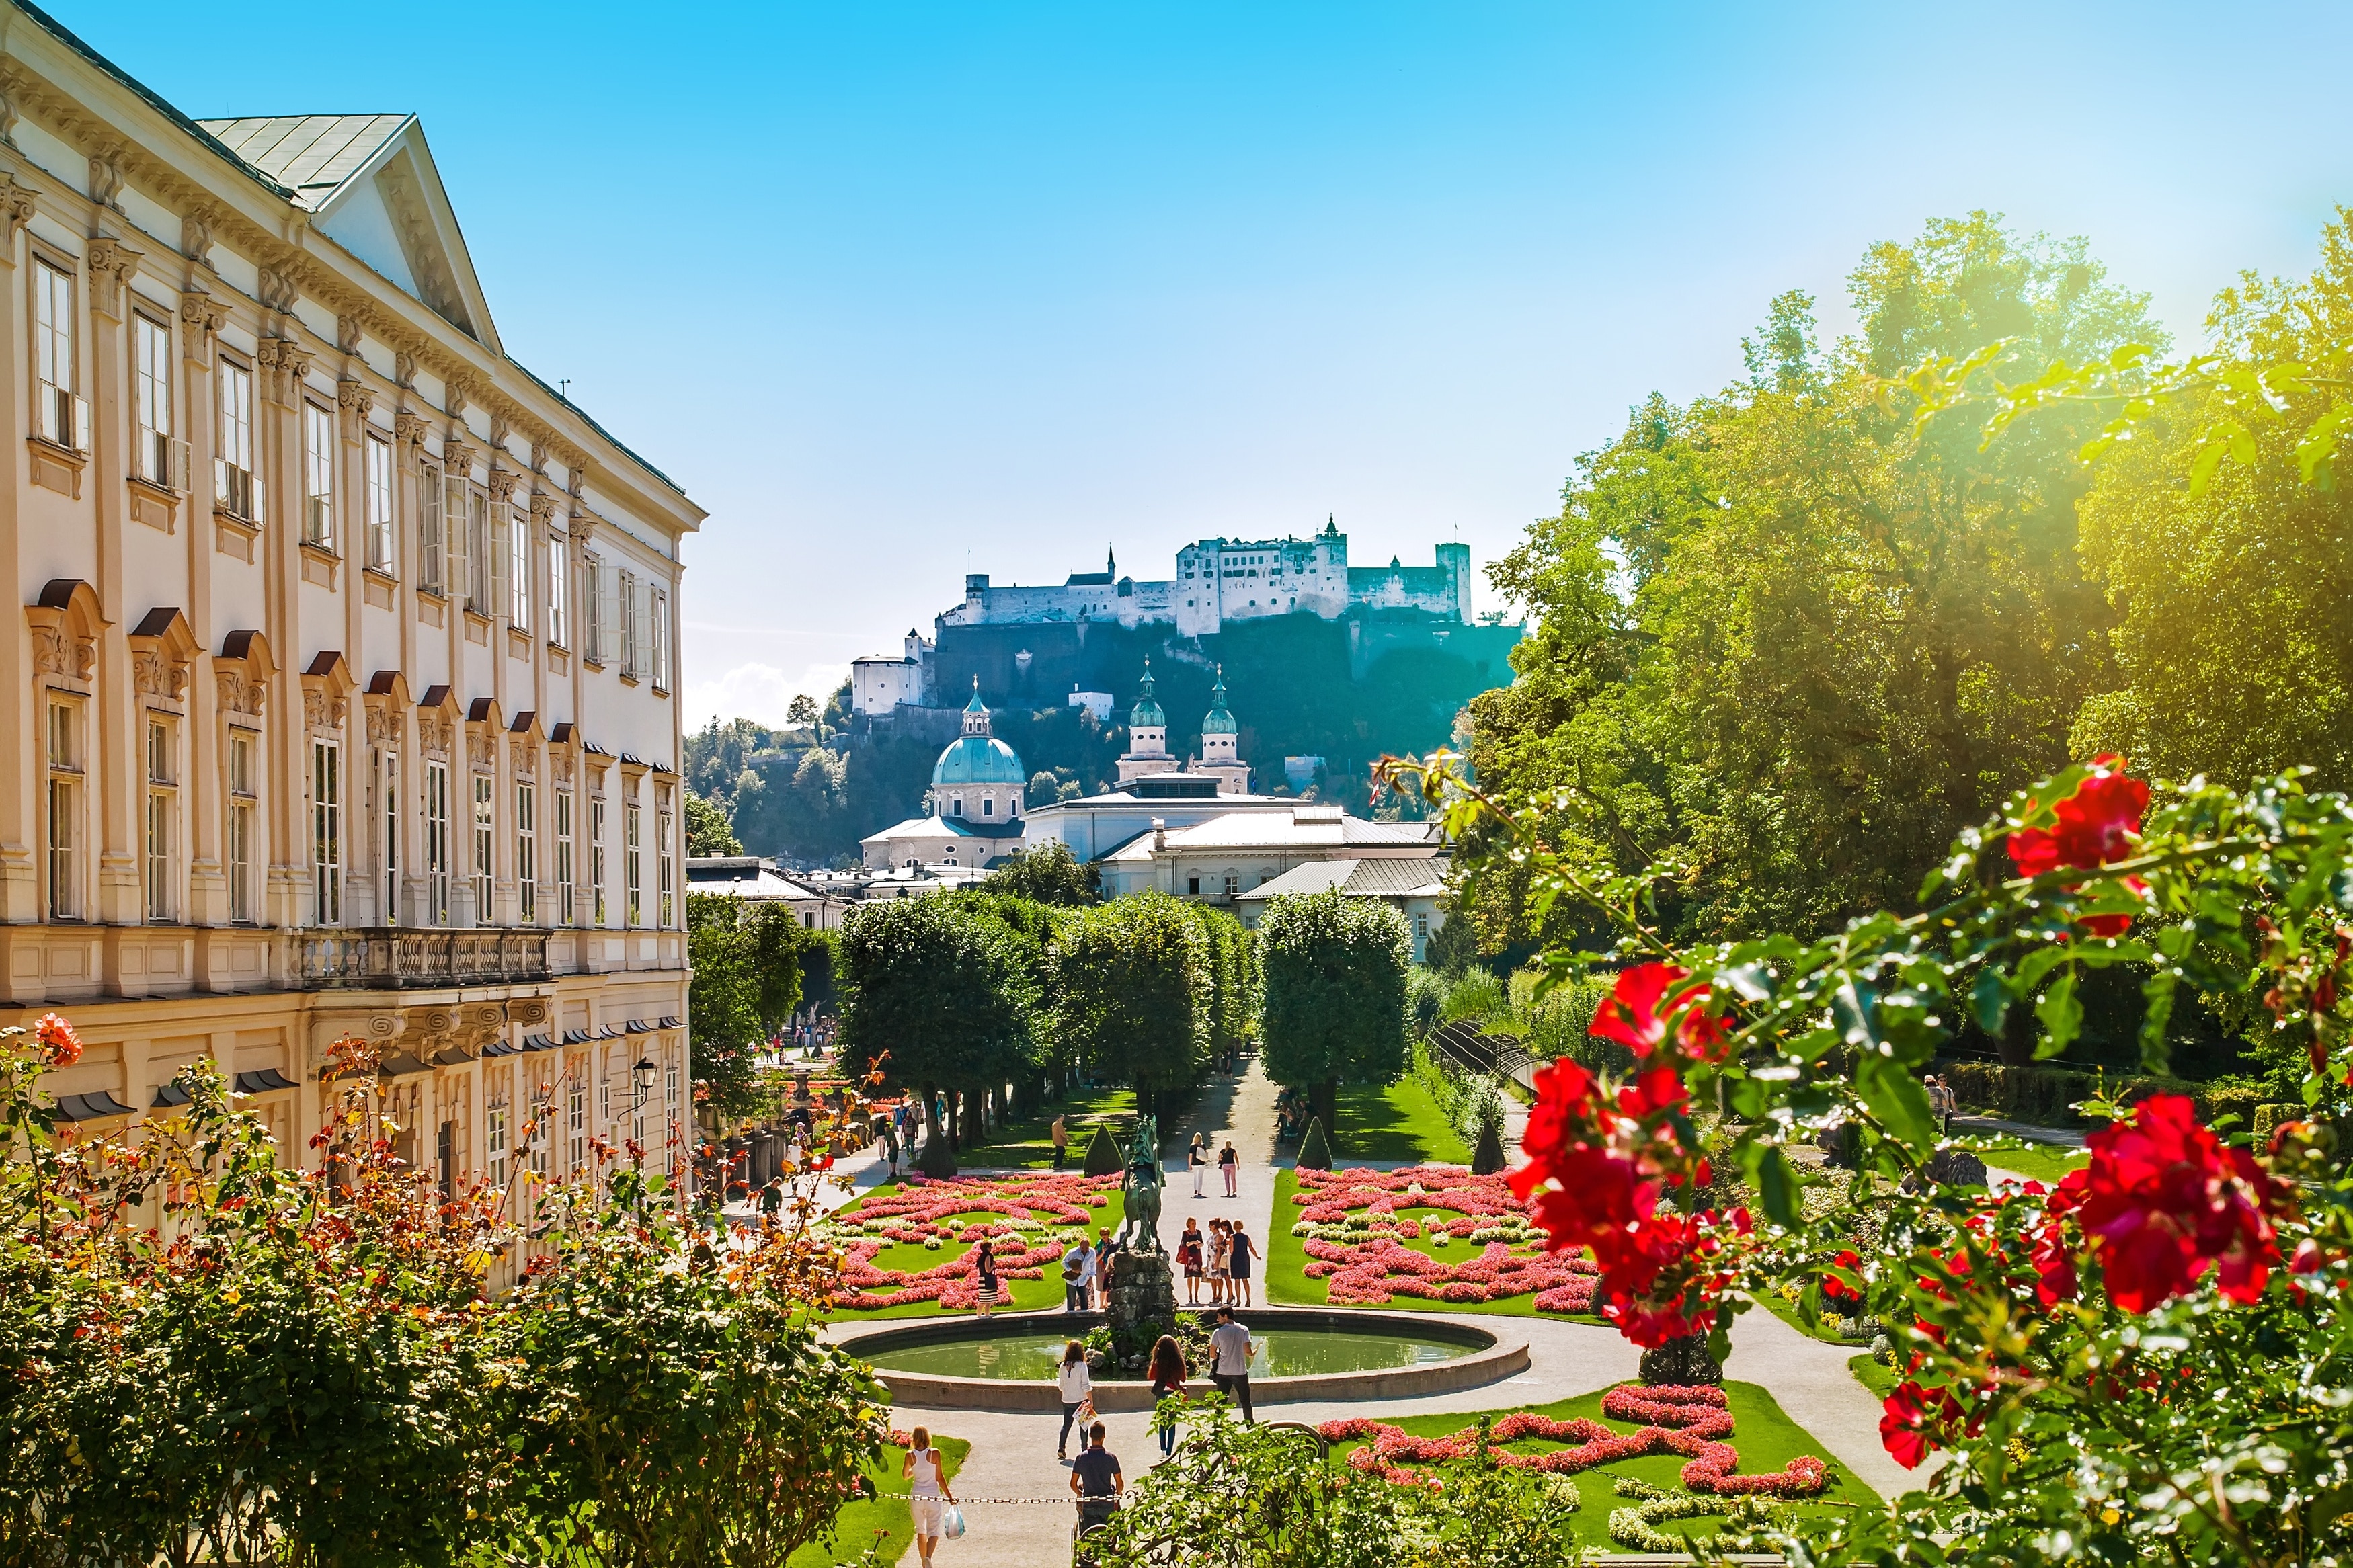 Mirabellgarten, eine grüne Oase in Salzburg, lädt zu einem entspannten Spaziergang inmitten der Natur ein. Lernen Sie die Einkaufsmöglichkeiten und die erstklassigen Restaurants in dieser familienfreundlichen Gegend kennen. 